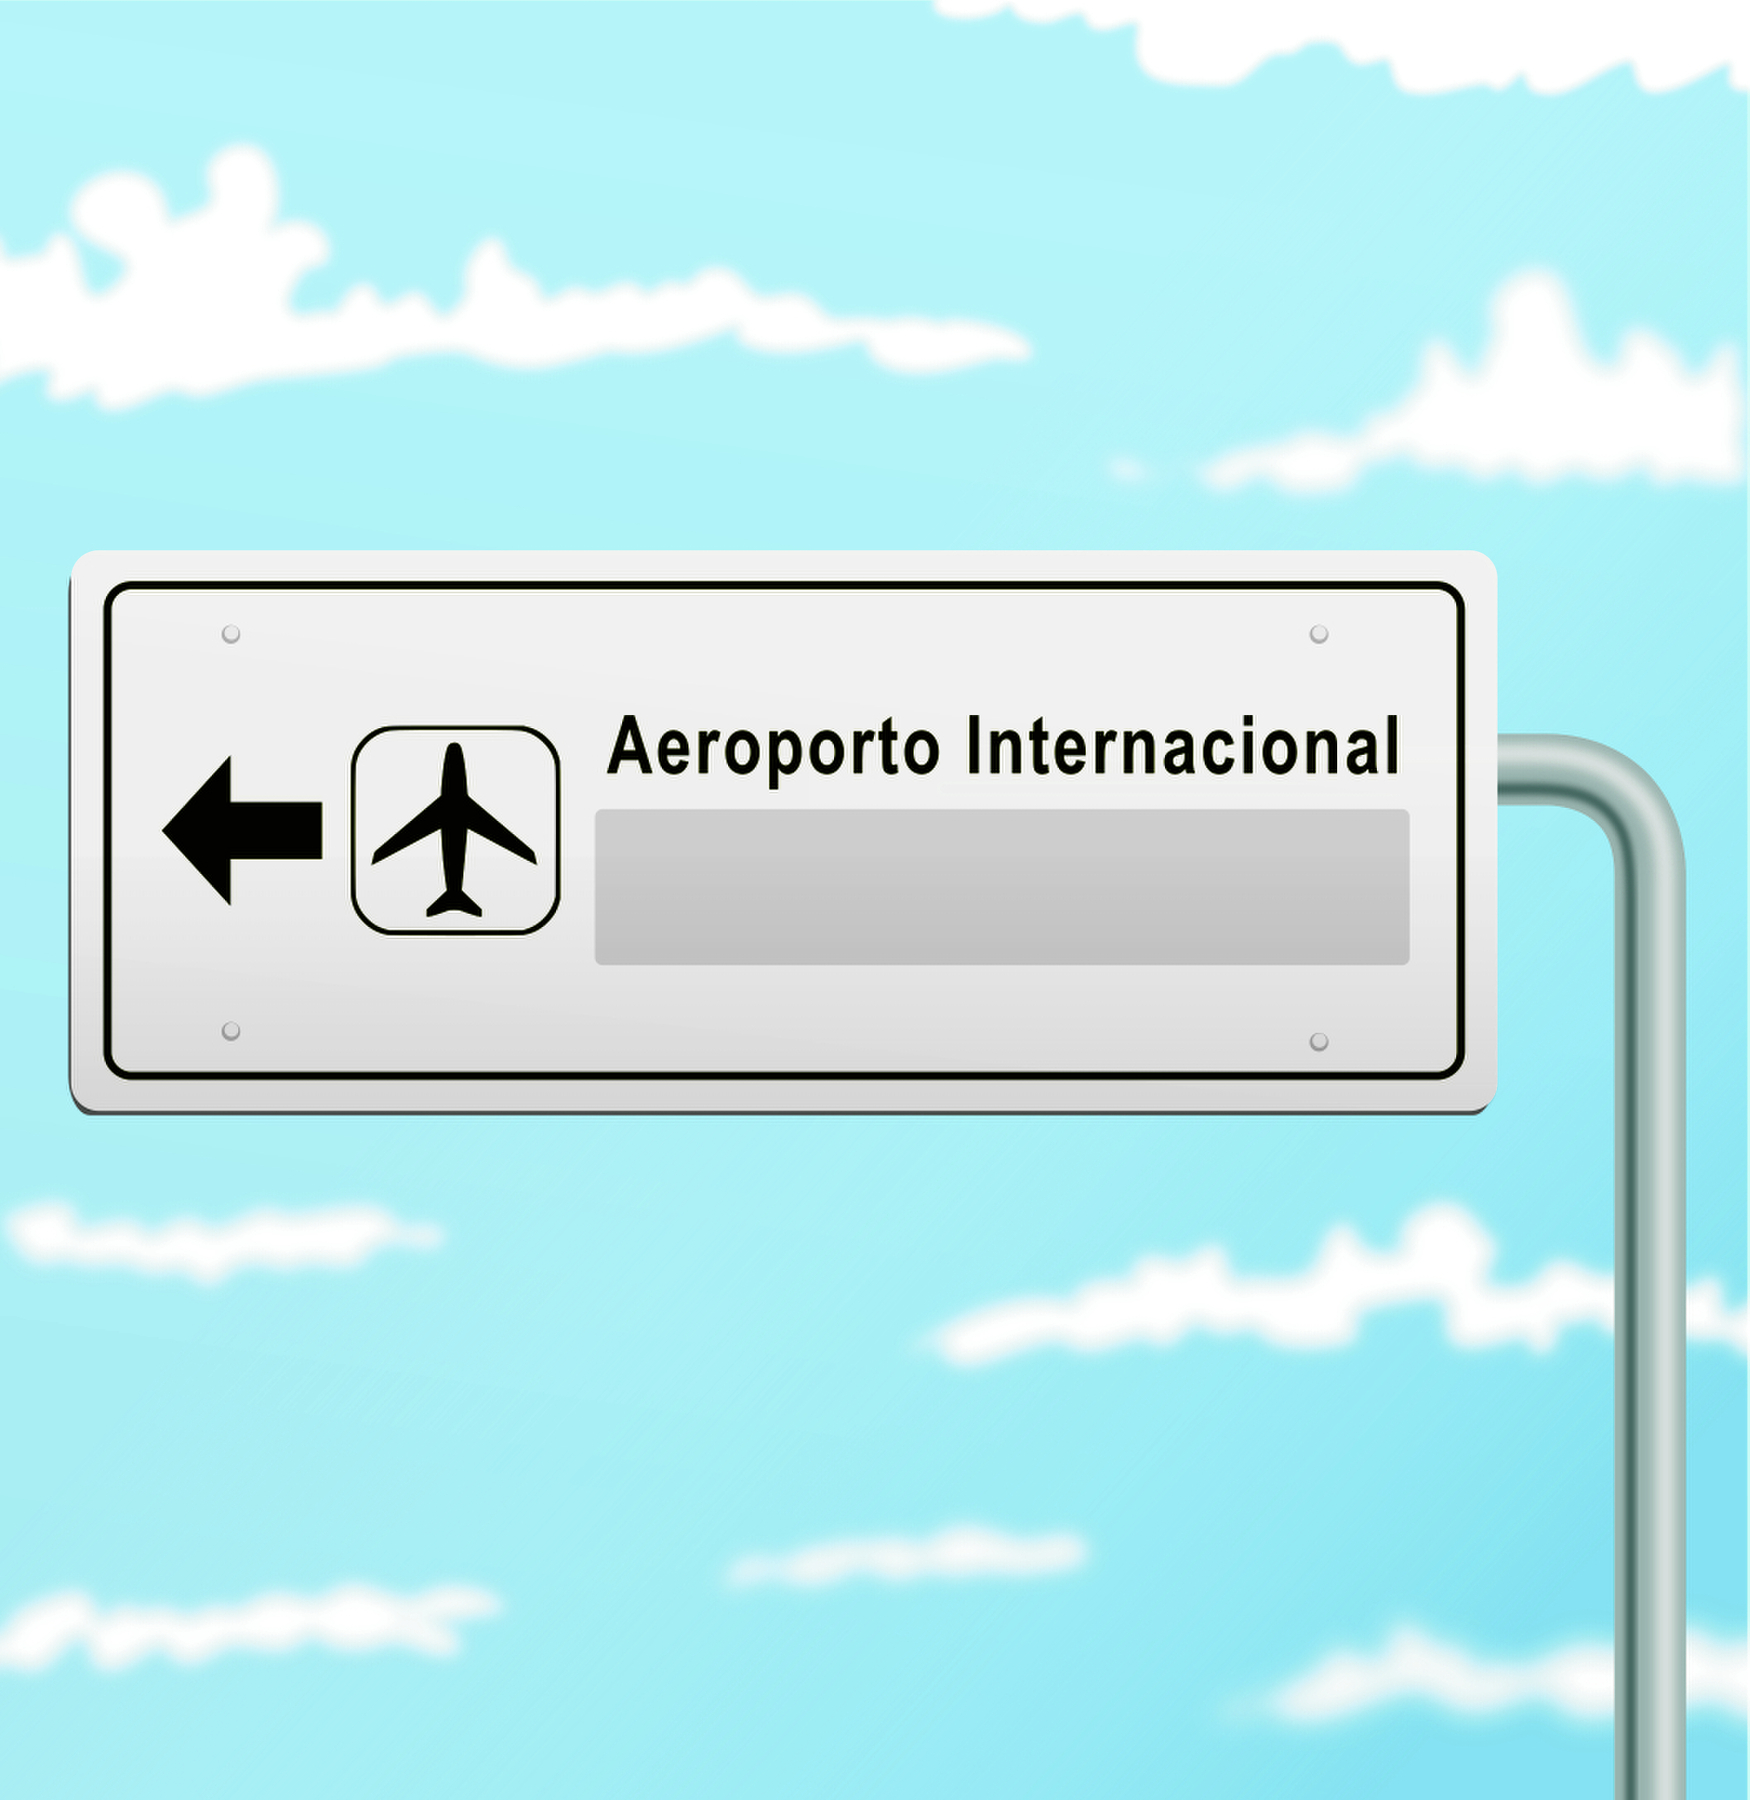 Ilustração. Placa de trânsito cinza indicando com seta para a esquerda, um avião em preto e texto: Aeroporto Internacional. Ao fundo, céu em azul com nuvens brancas. Espaço para resposta.